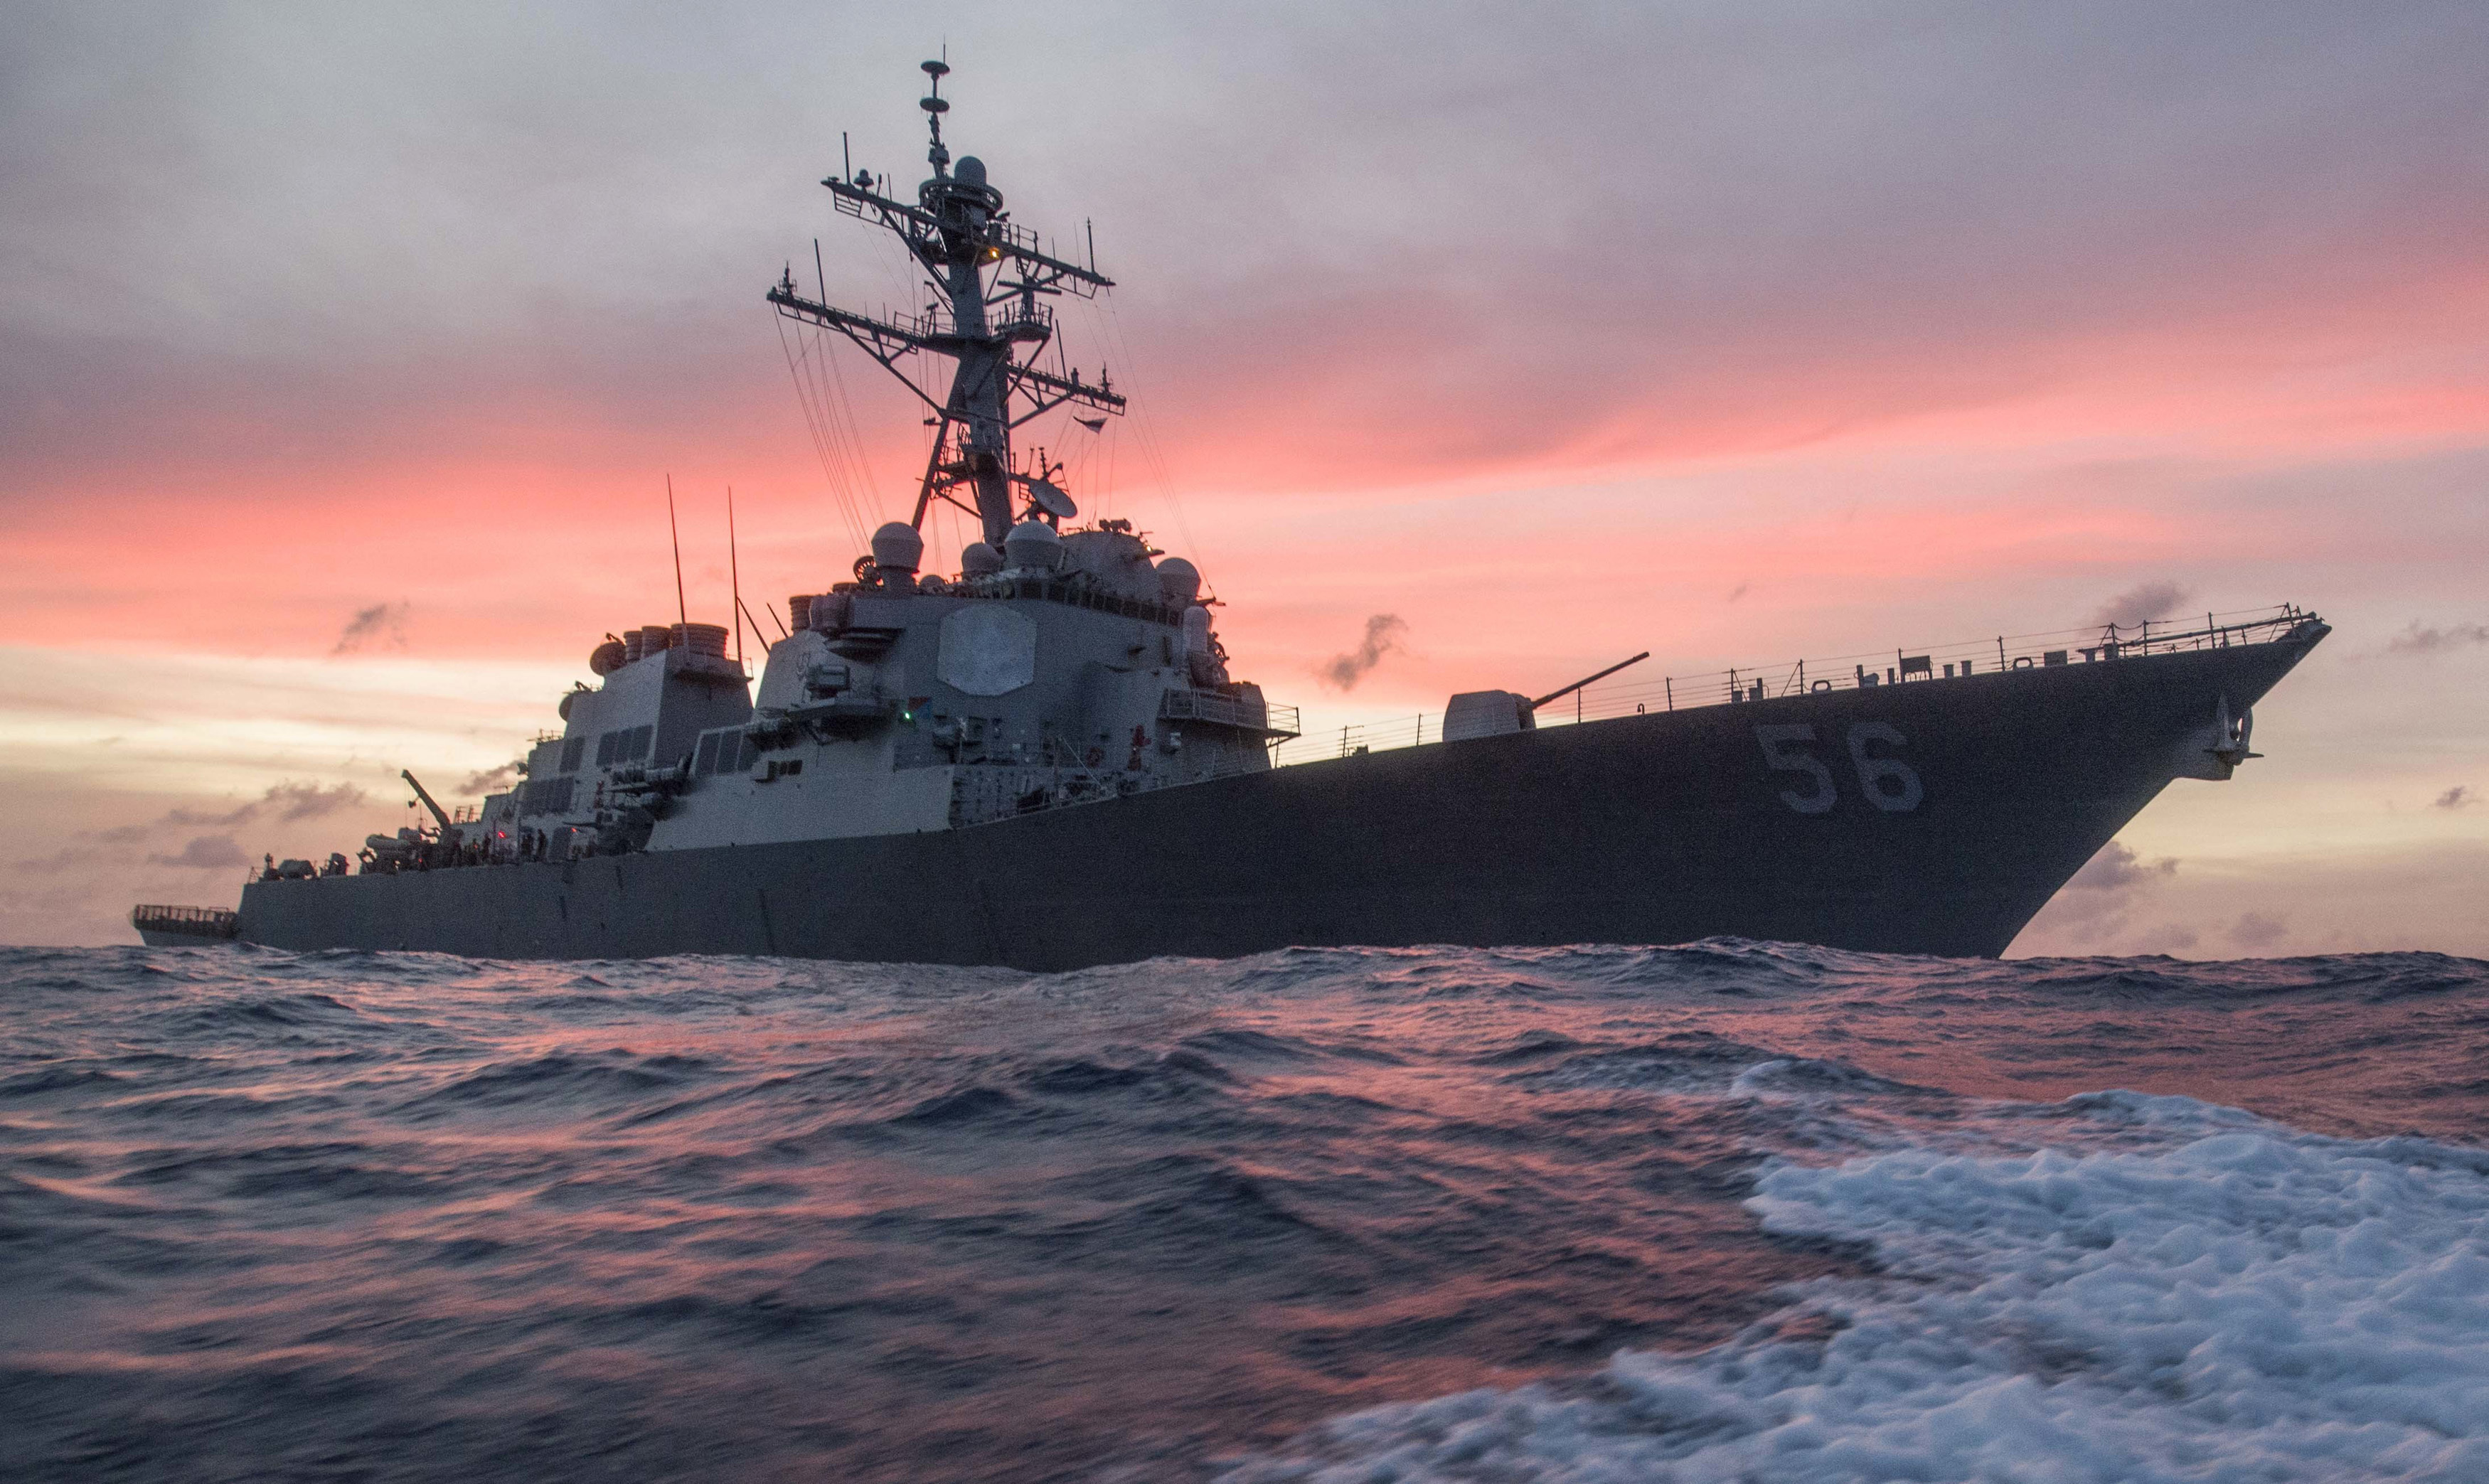 Китайският флот днес нареди на американски боен кораб да напусне